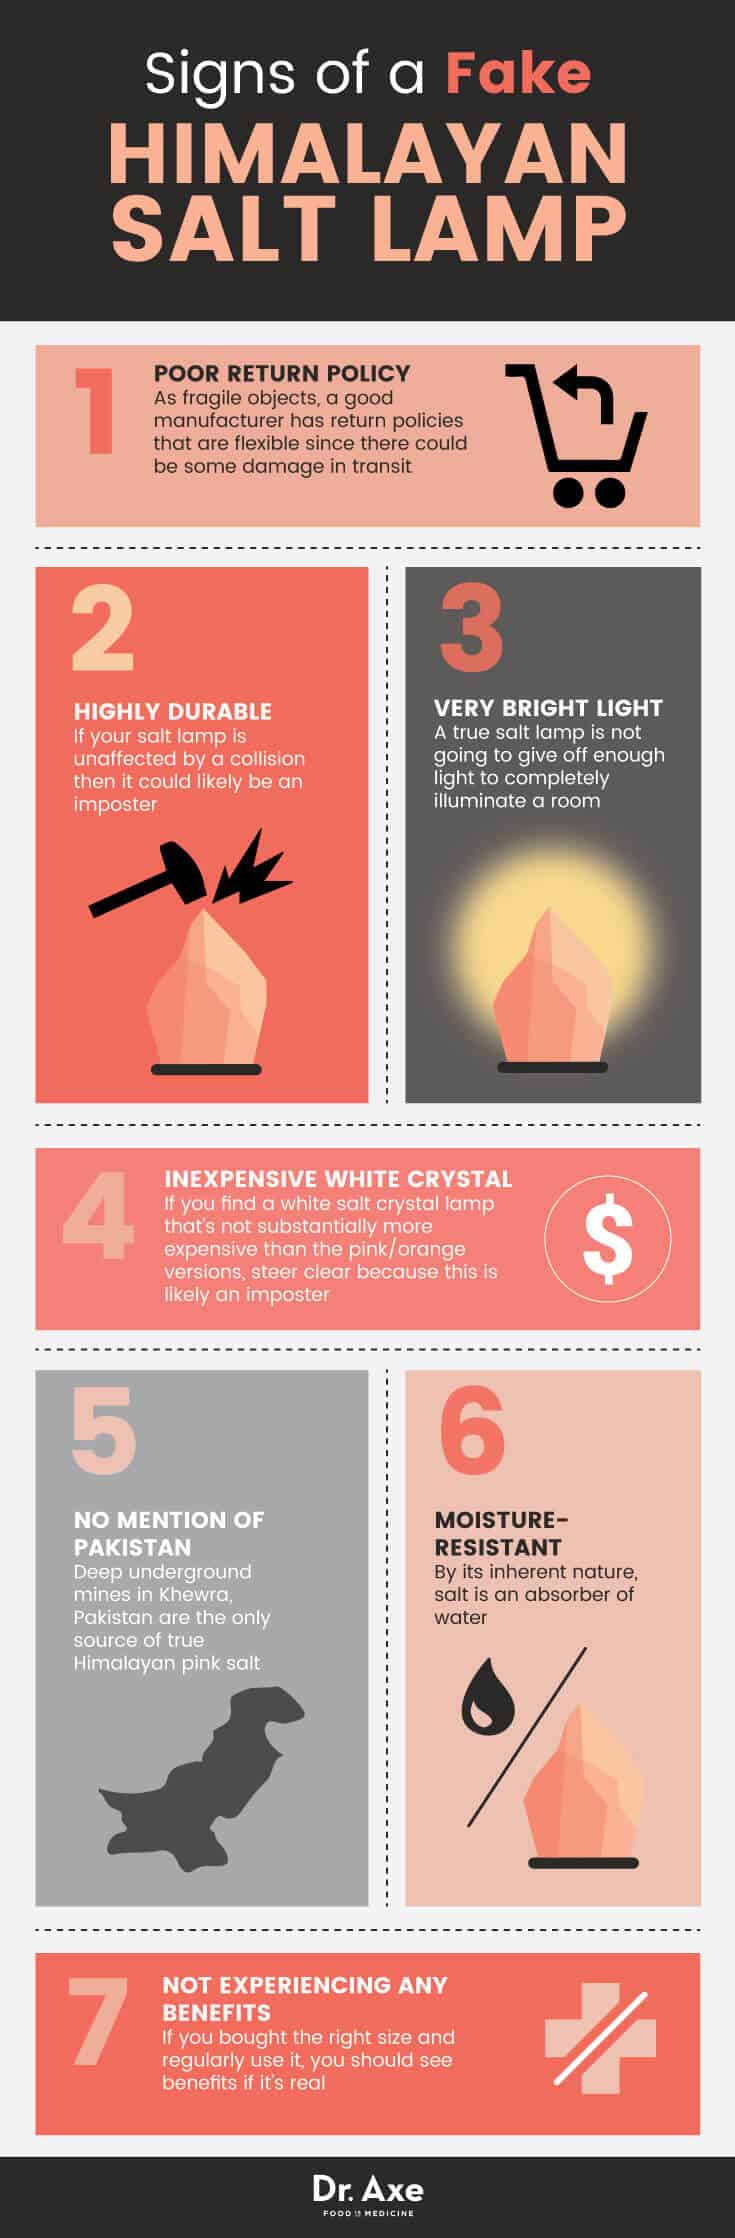 Fake Himalayan salt lamp signs - Dr. axe